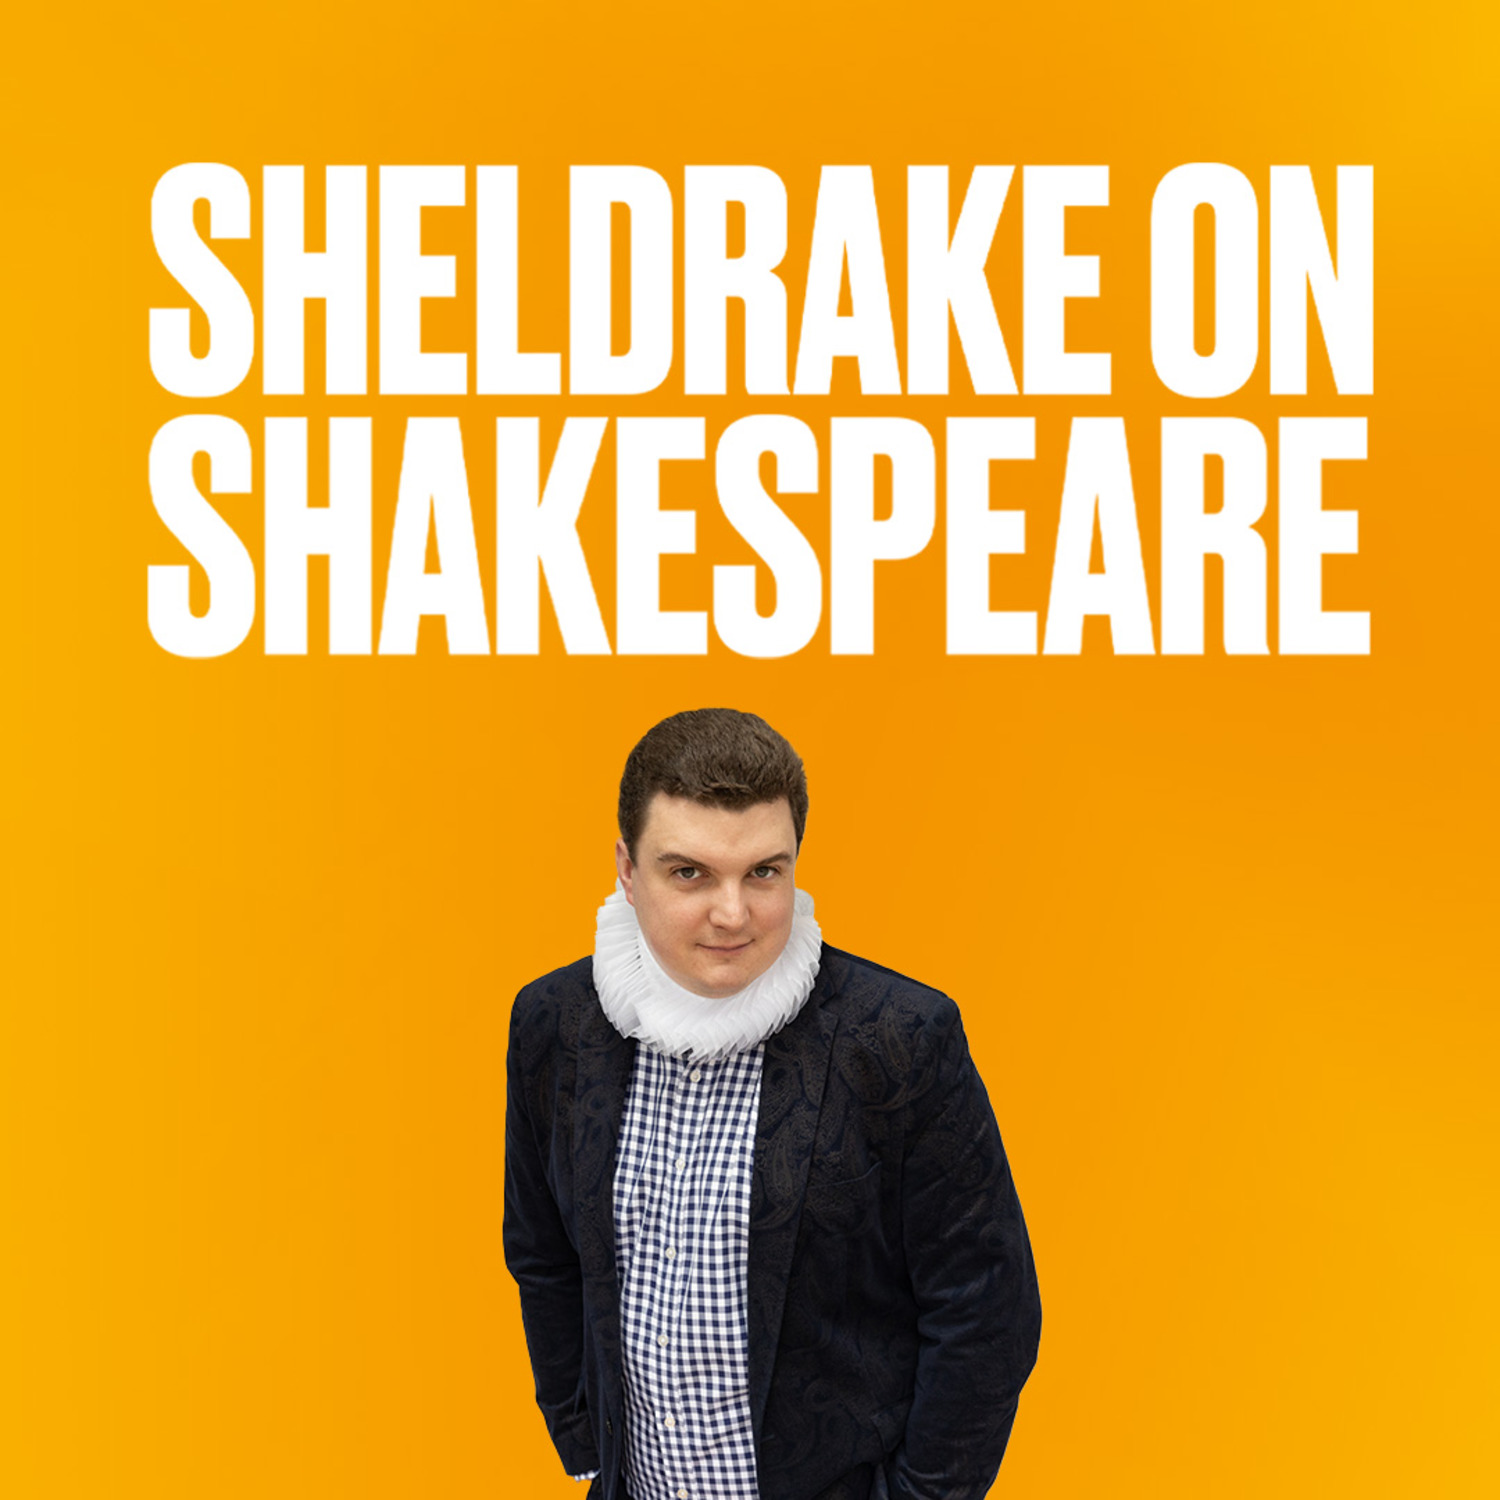 Sheldrake on Shakespeare